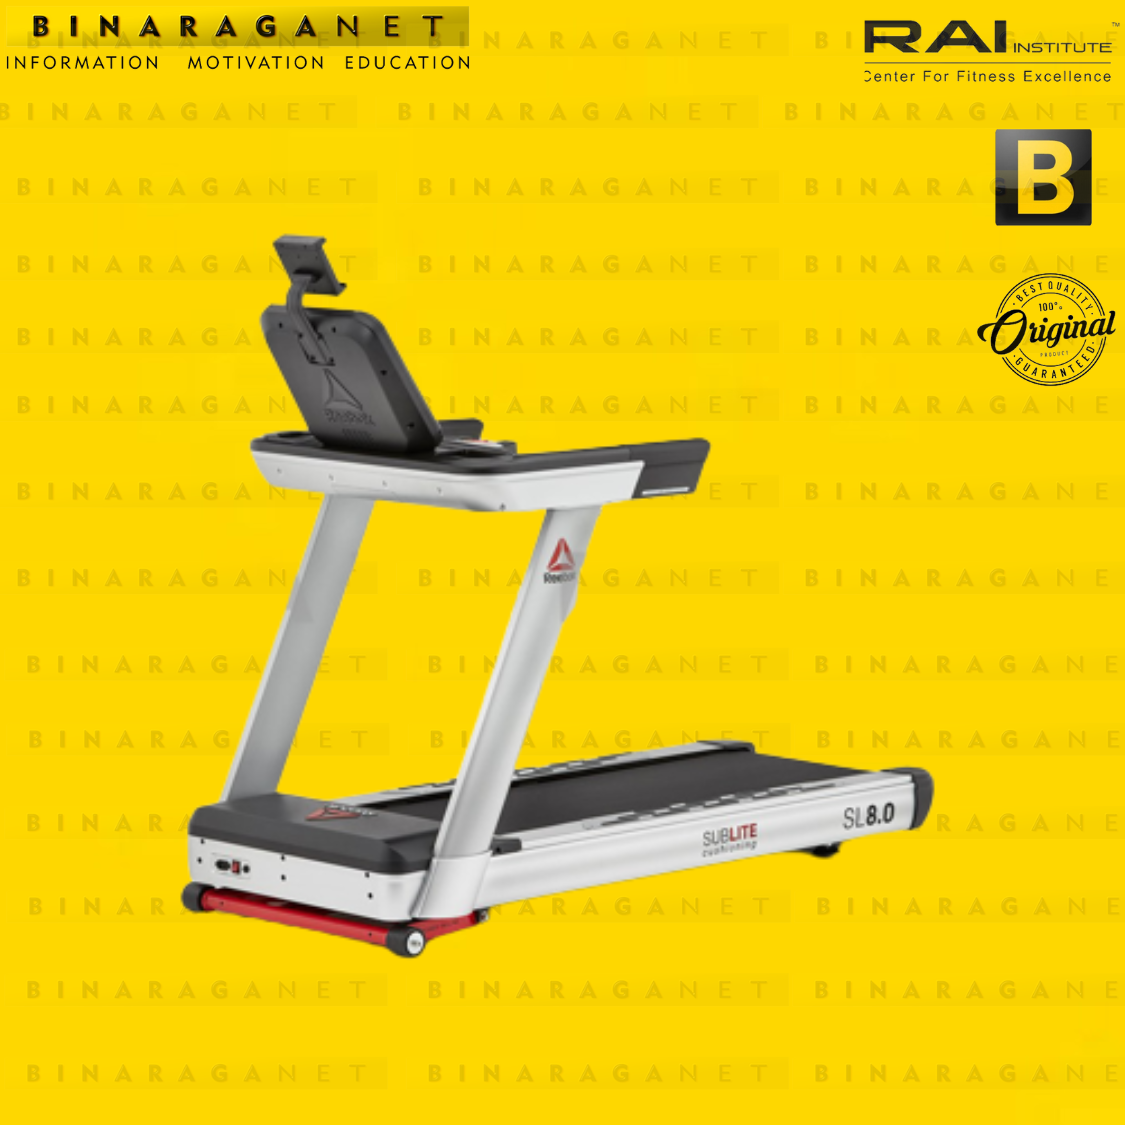 Reebok SL8.0 Treadmill Free Reebok Upright Bike A4